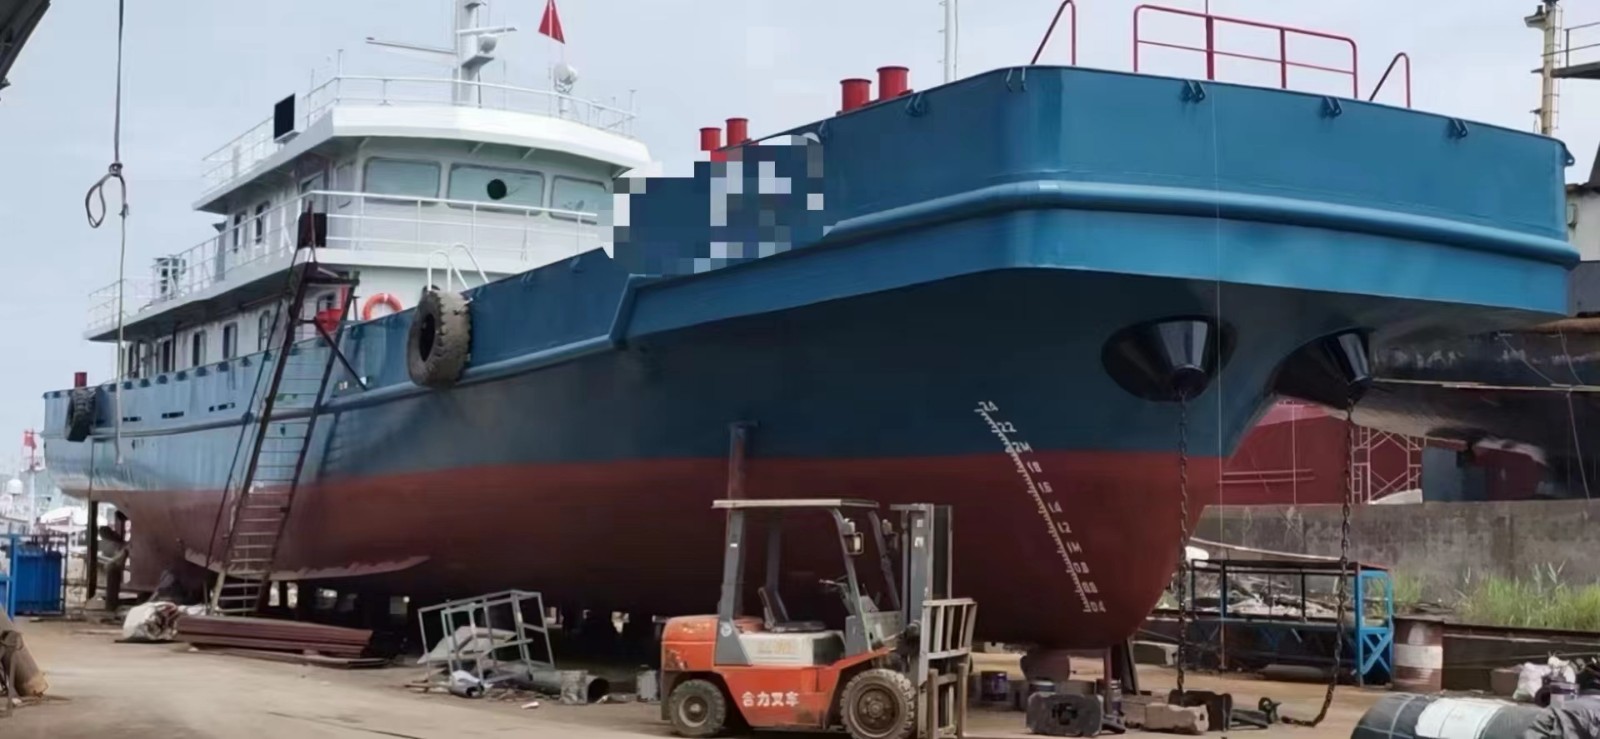 出售2022年浙江造42.8米近海钢质平头双机交通船